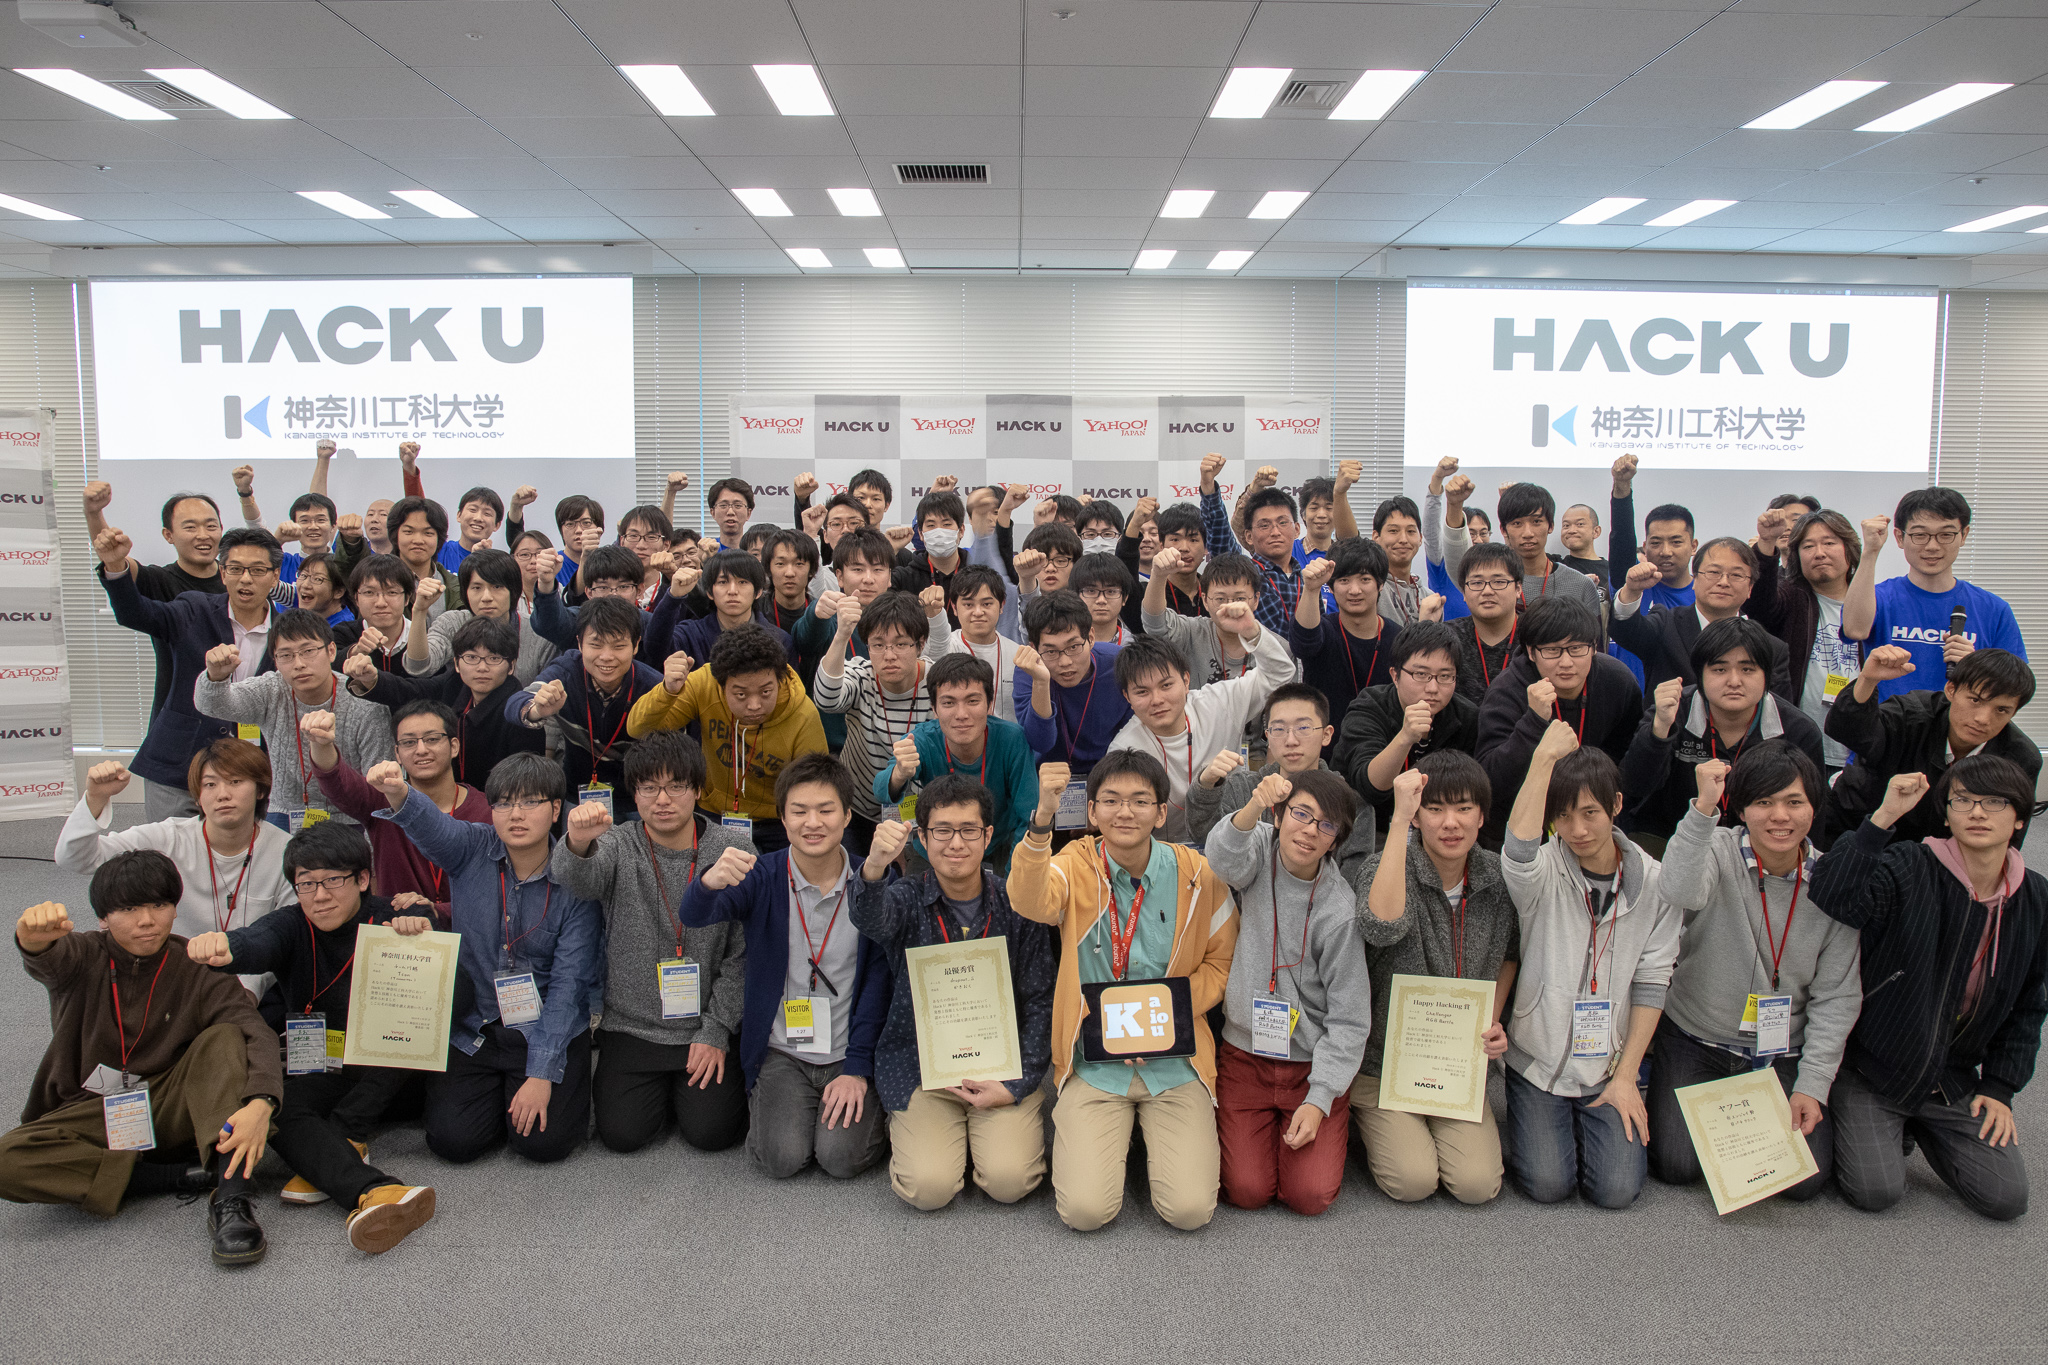 Hack U 神奈川工科大学 2018